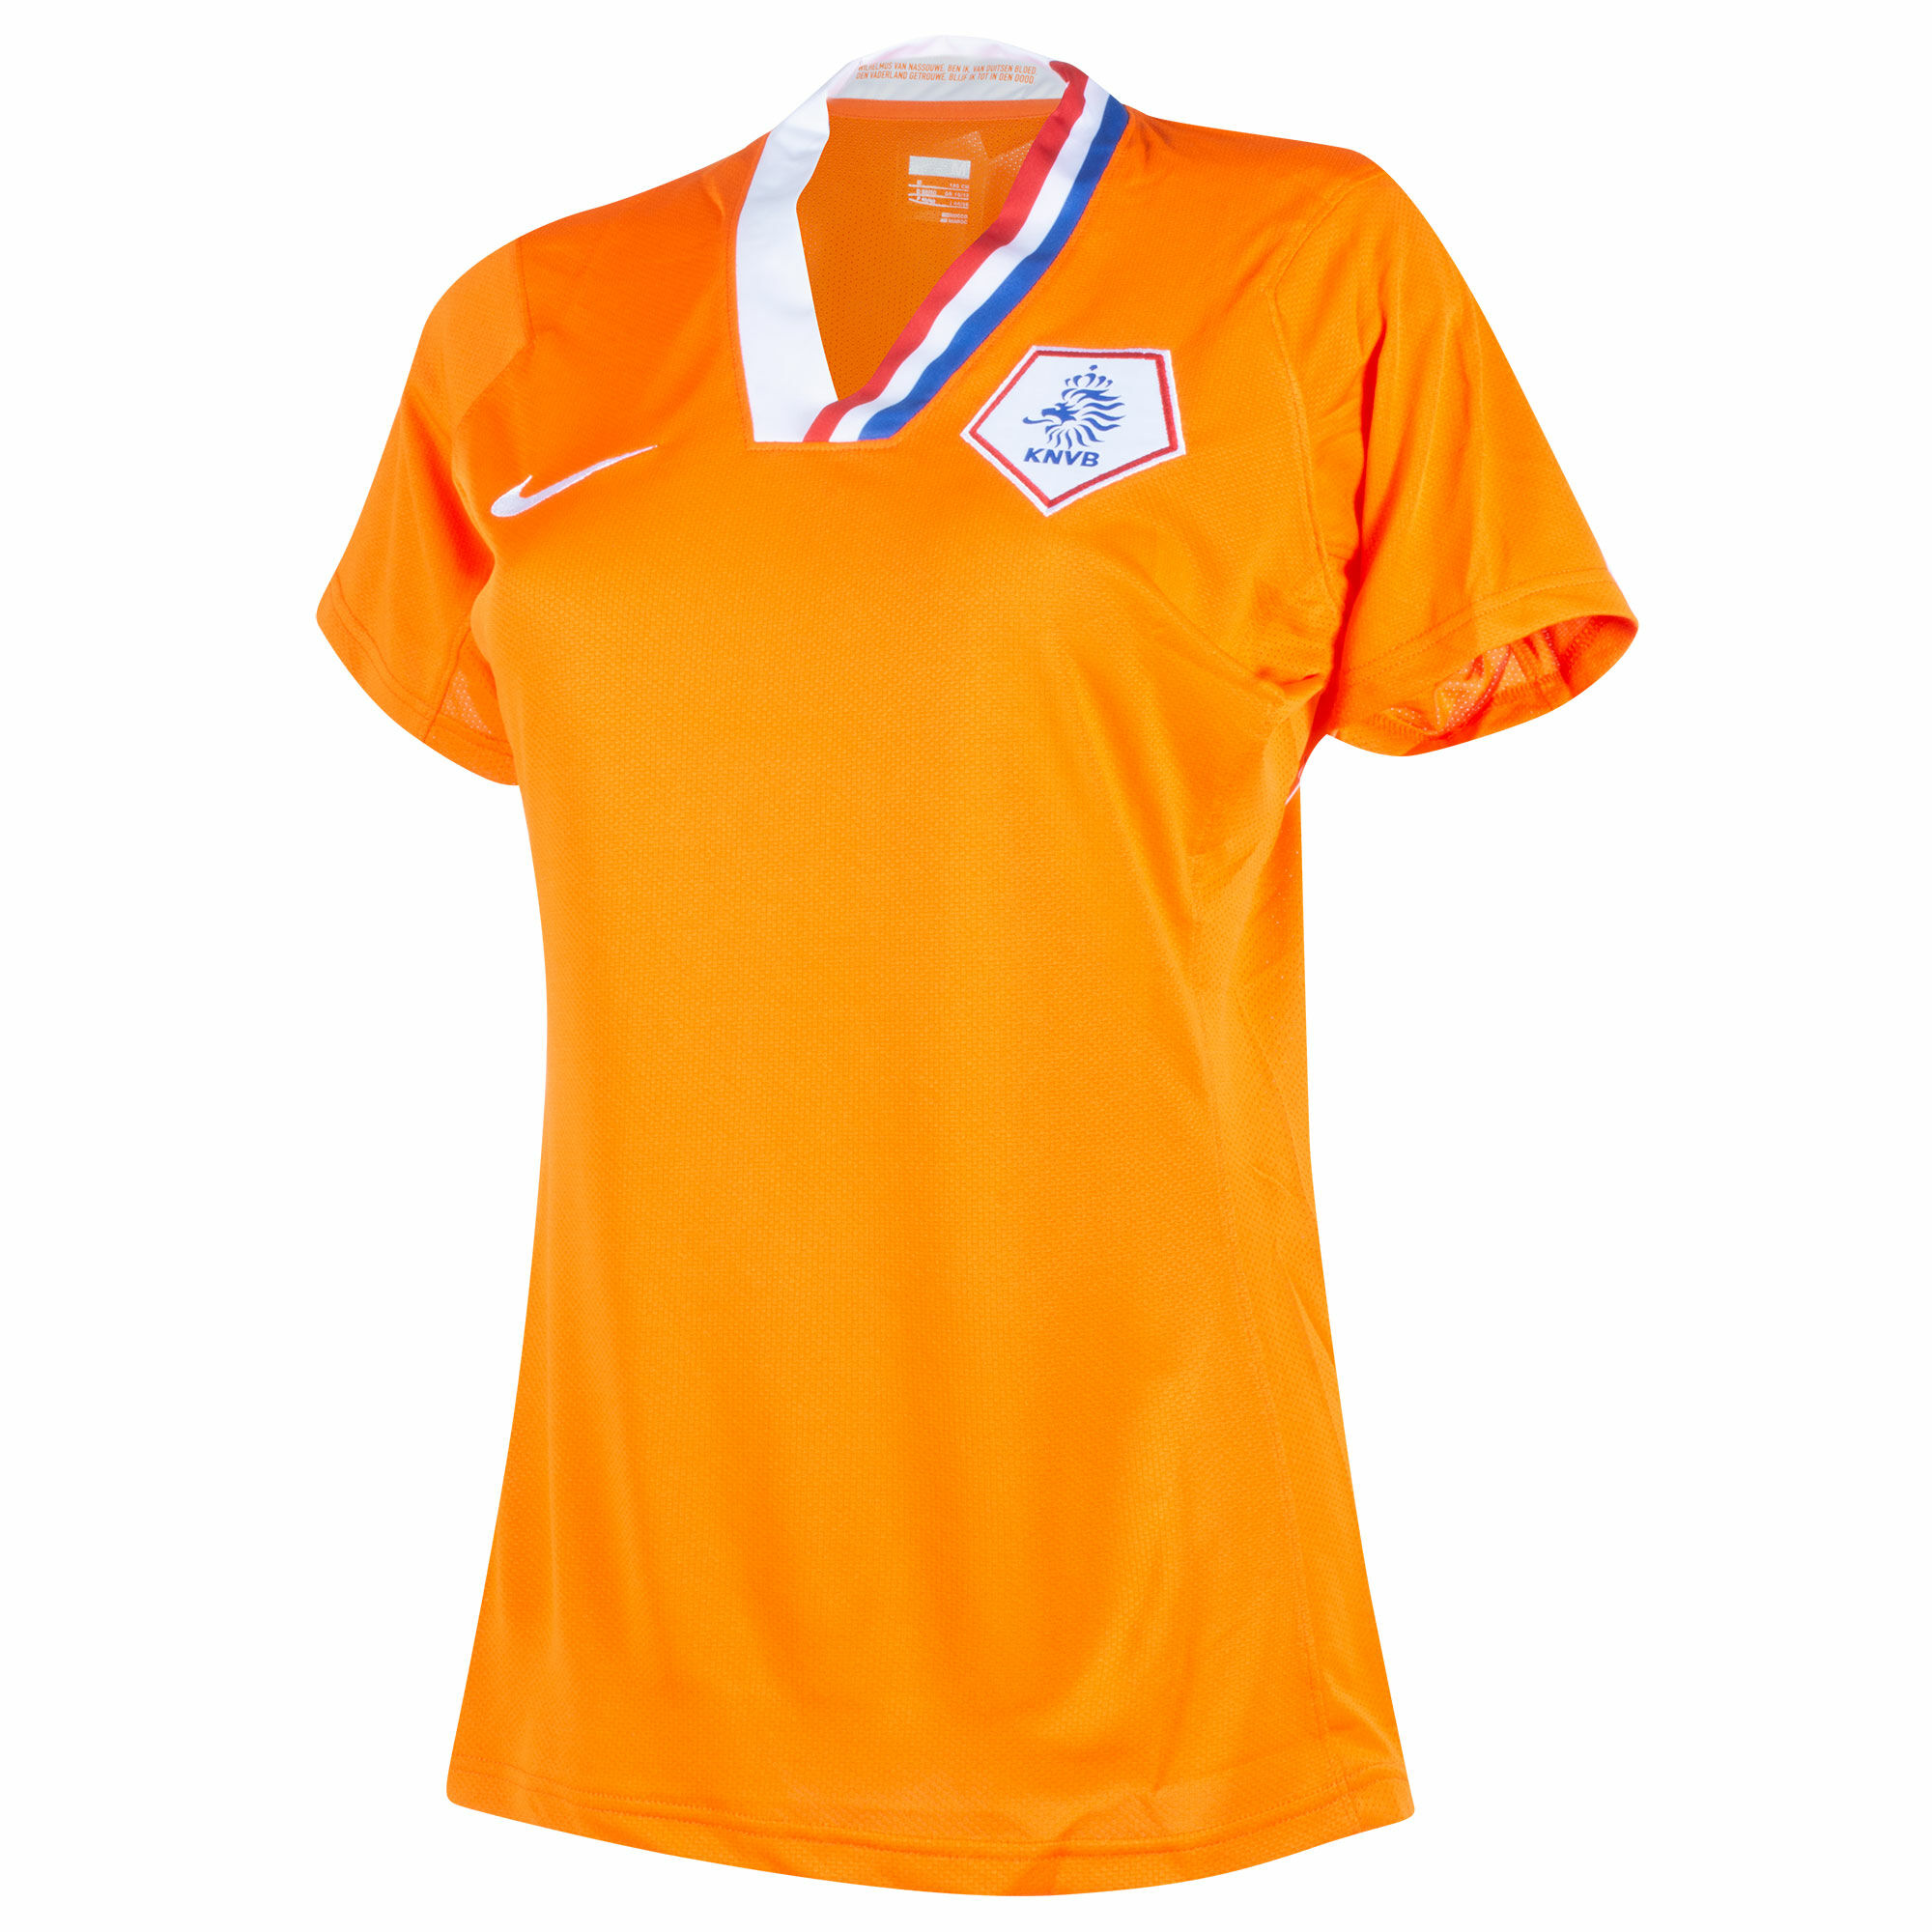 Nizozemí - Dres fotbalový dámský - oranžový, sezóna 2008/10, domácí